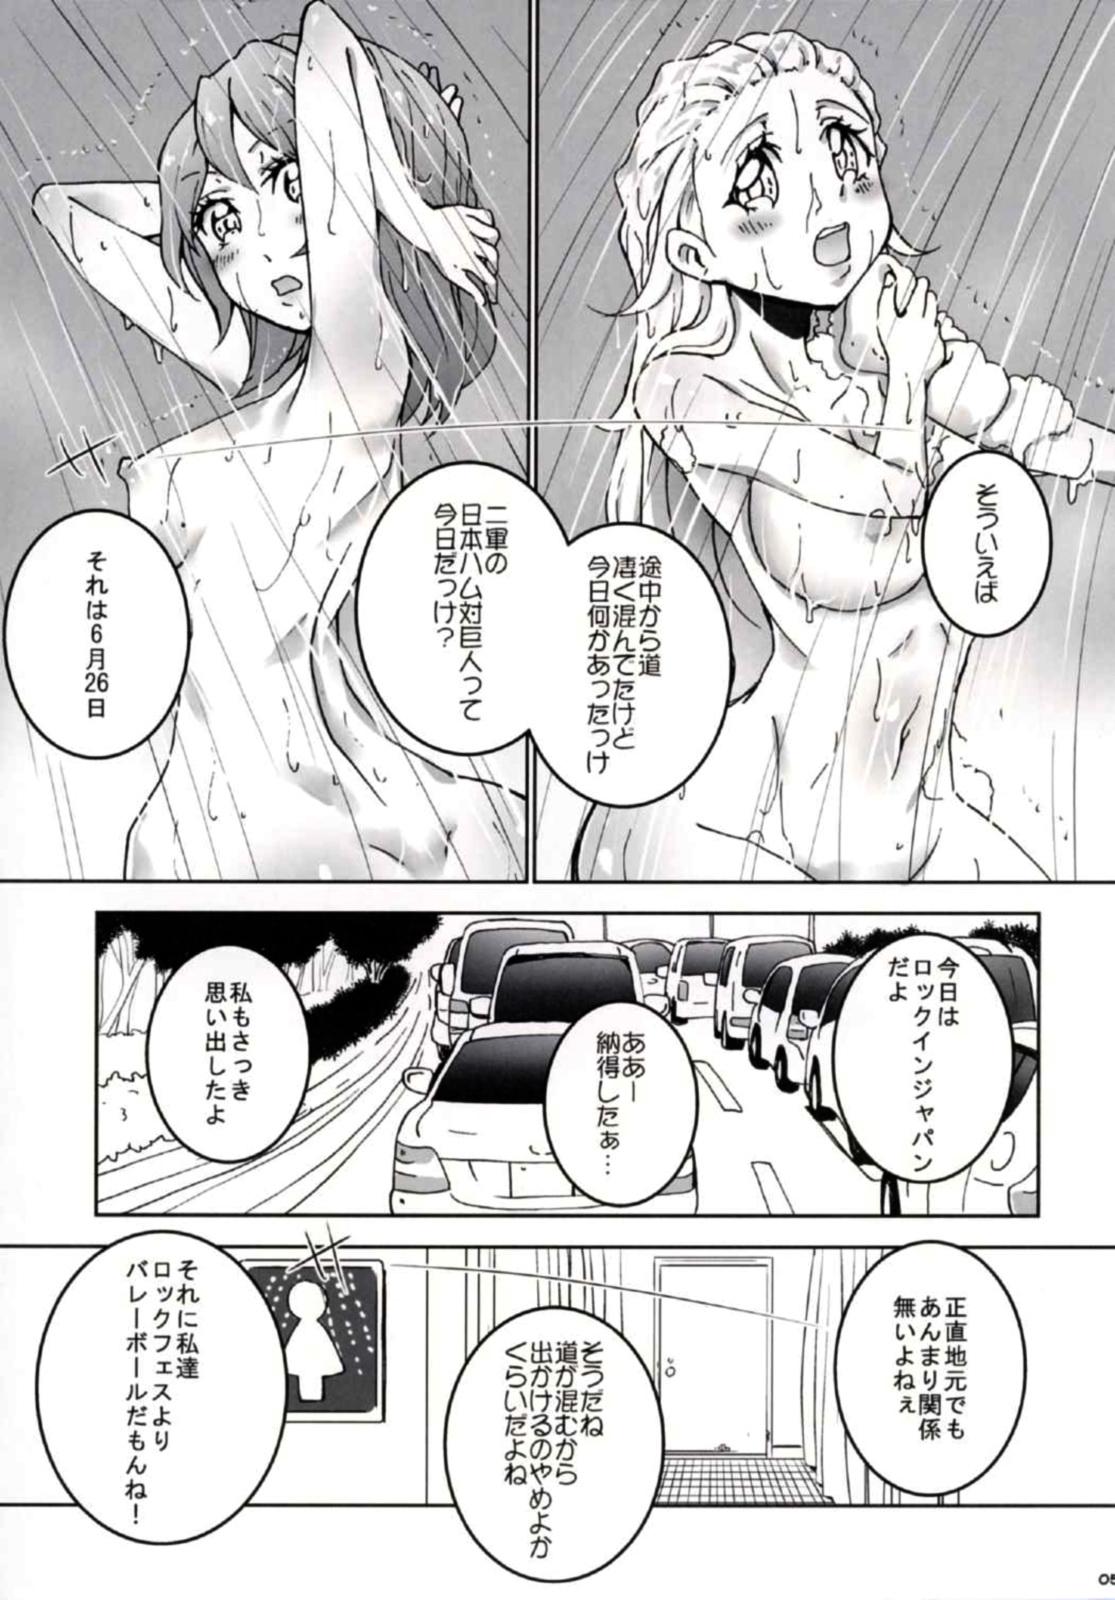 Amateur Blow Job (C90) [Ai no Kura (Takahagi Kemono)] 8-gatsu 14-ka no Tonari no Shi (Girls und Panzer) - Girls und panzer Blow Job Contest - Page 6